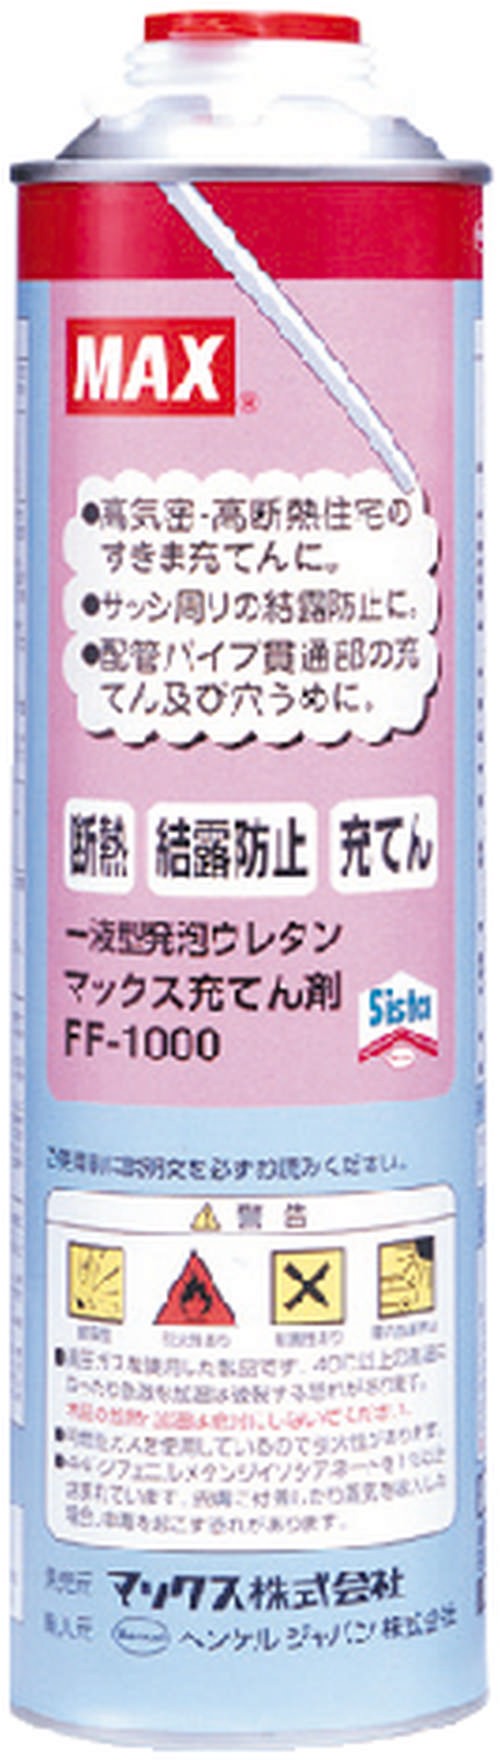 【マックス】充填剤FF-1000